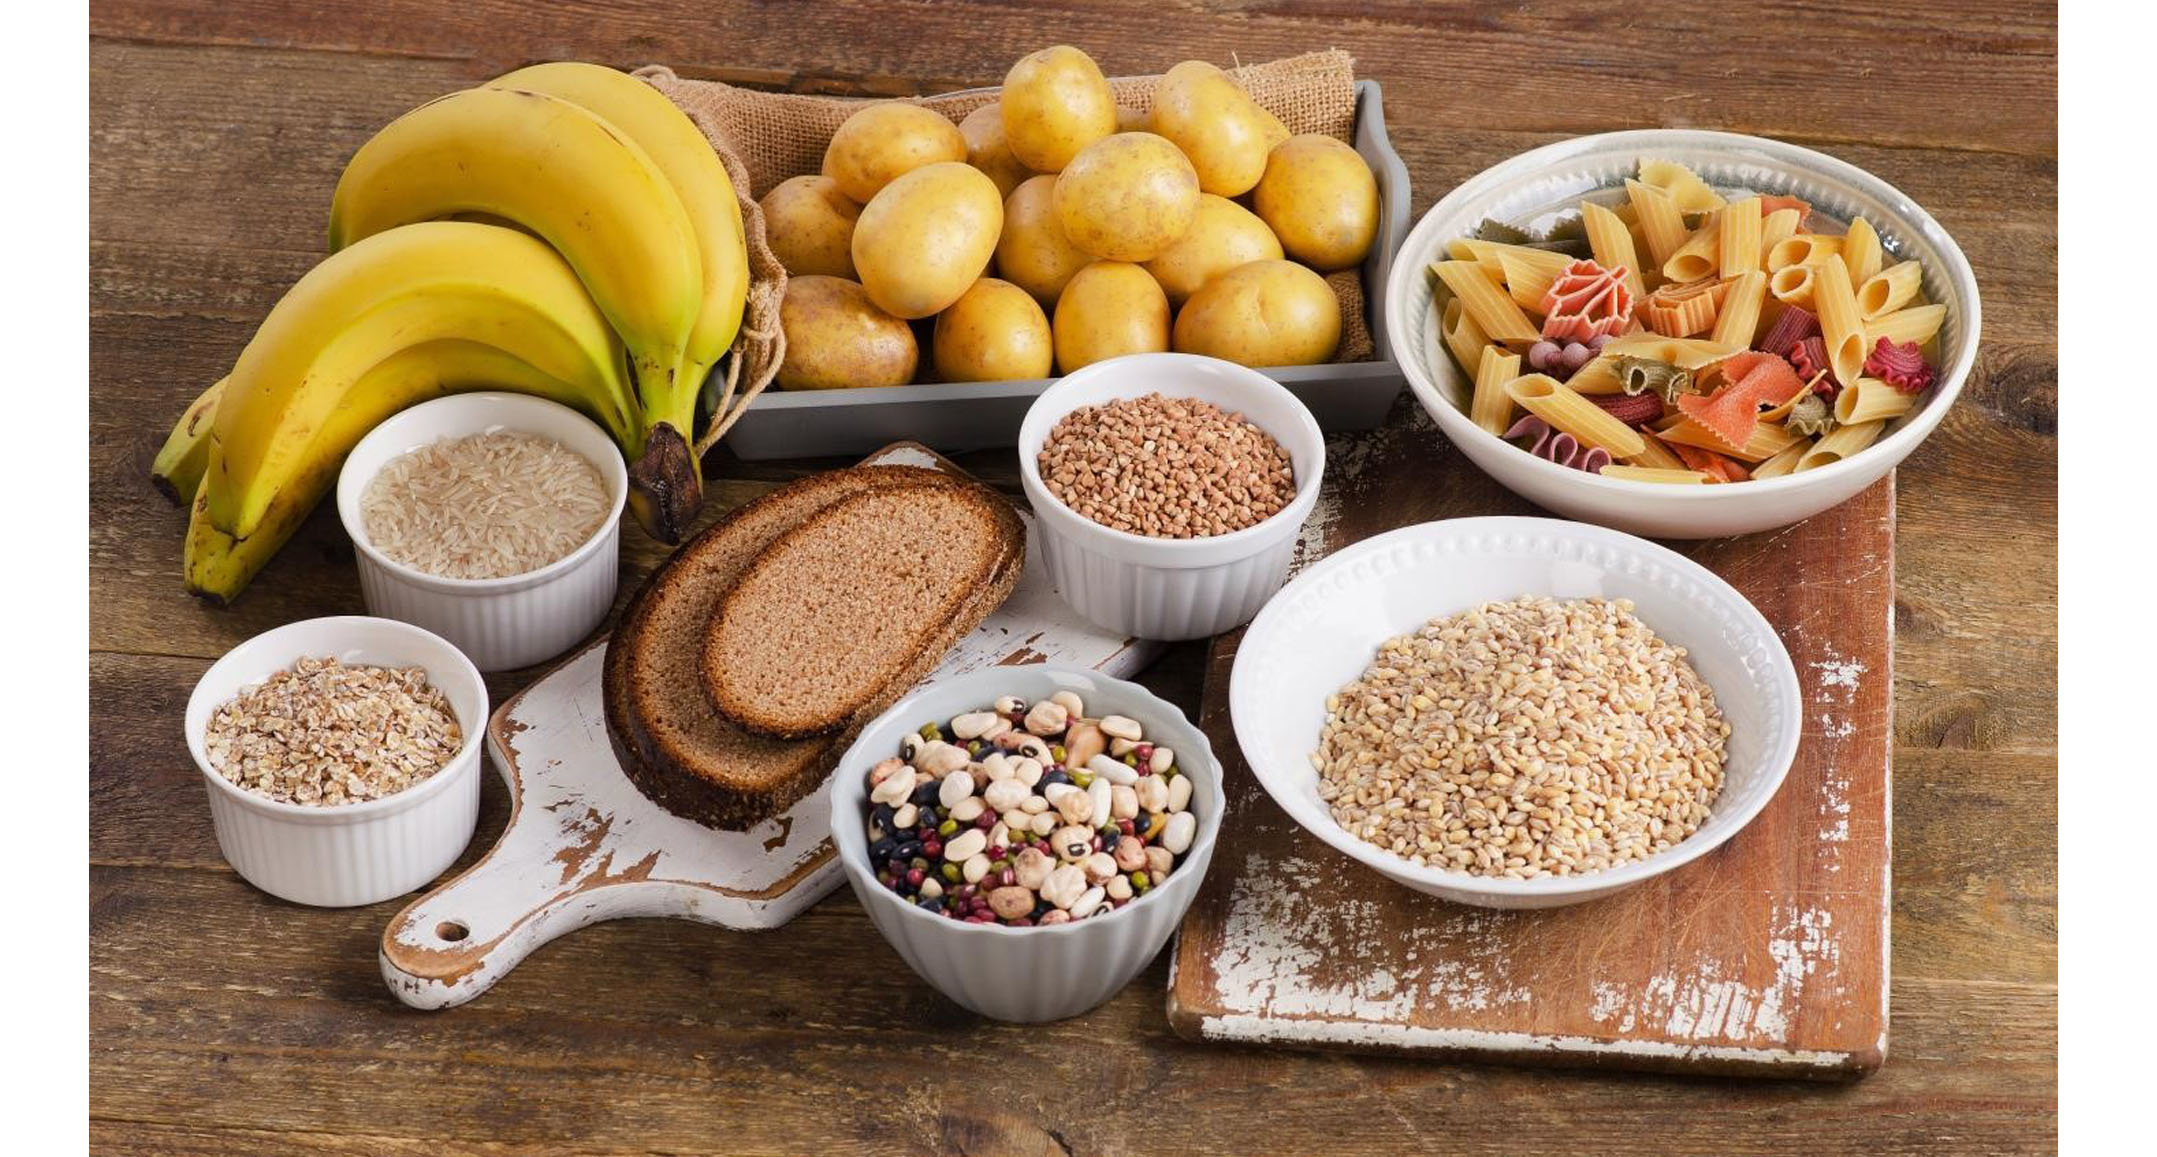 녹색 바나나, 고구마, 감자, 렌틸콩, 통곡물 등과 차게 식은 밥처럼 노화 목말에 많이 포함된 저항성 전분이 체중 감량과 당뇨 관리에 도움이 된다는 연구 결과가 나왔다.  픽사베이 제공